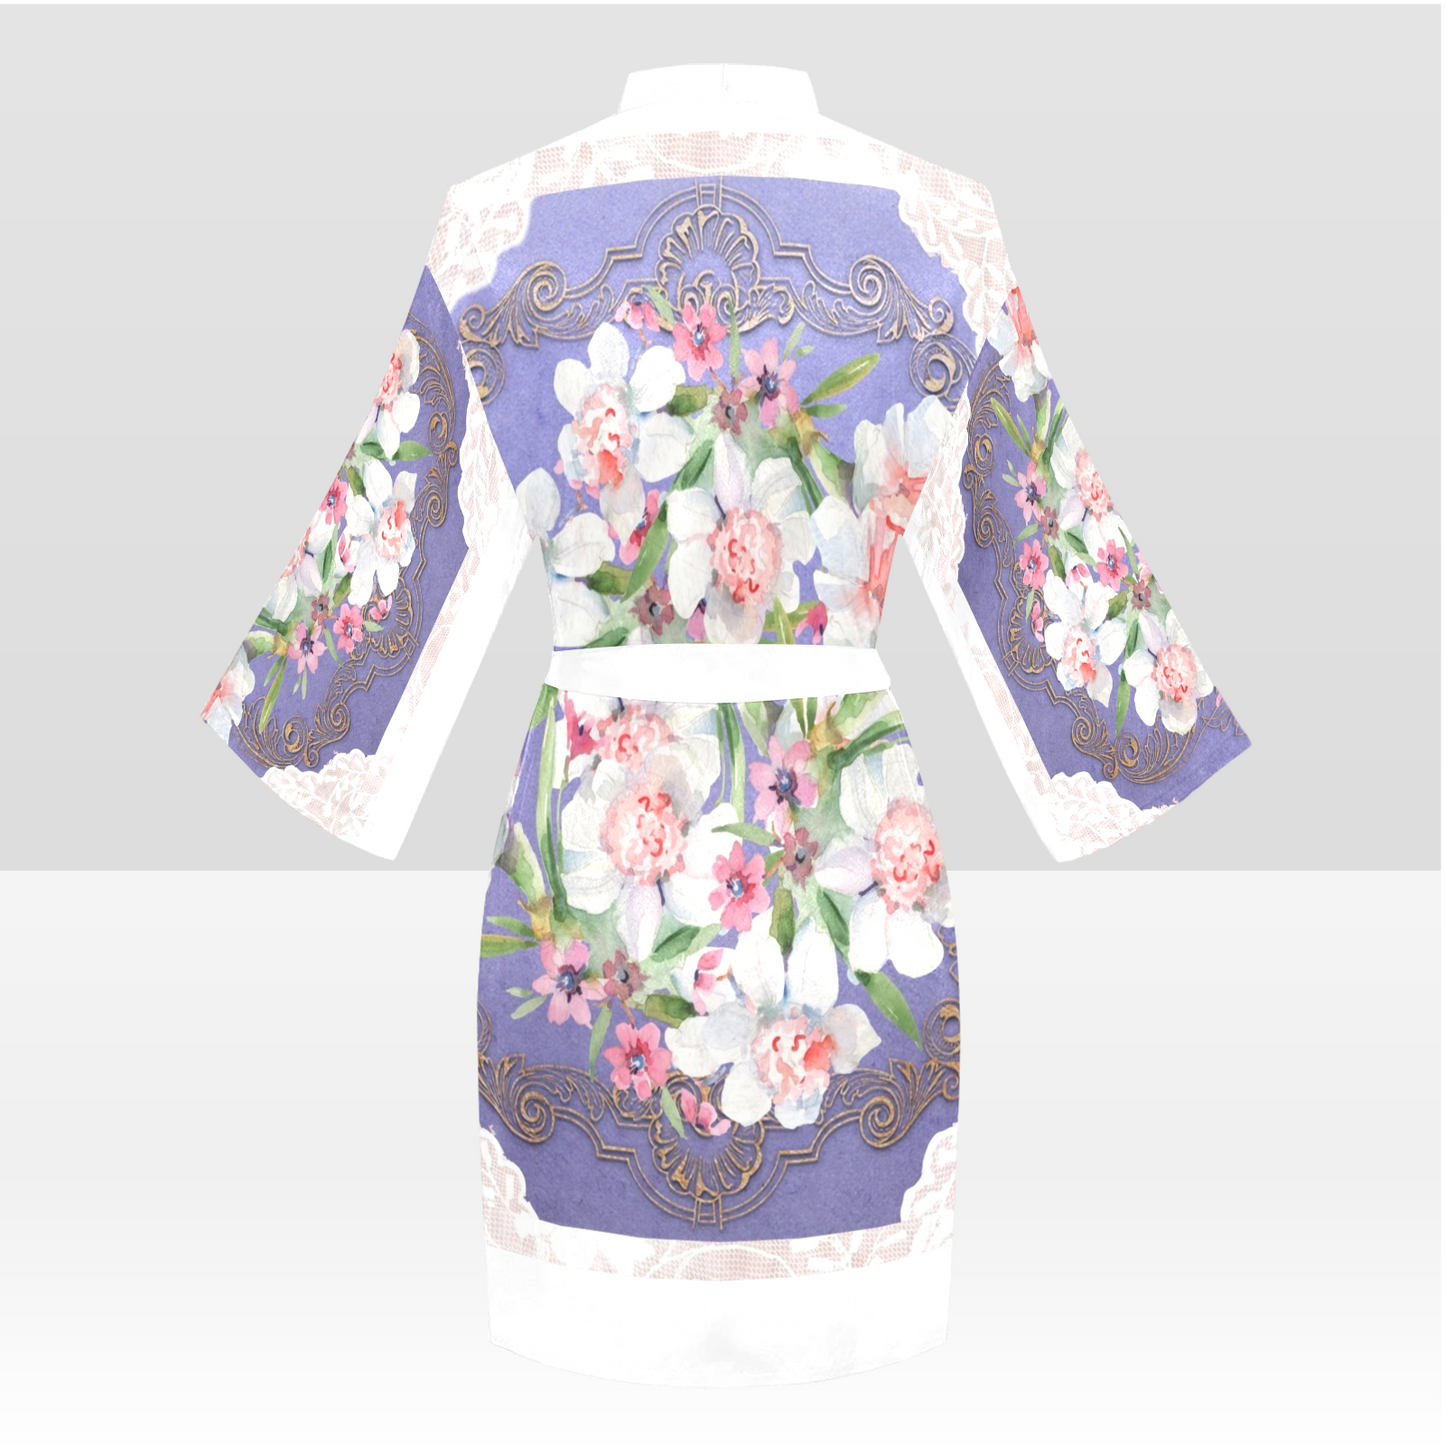 Victorian Lace Kimono Robe, Black or White Trim, Sizes XS to 2XL, Design 47